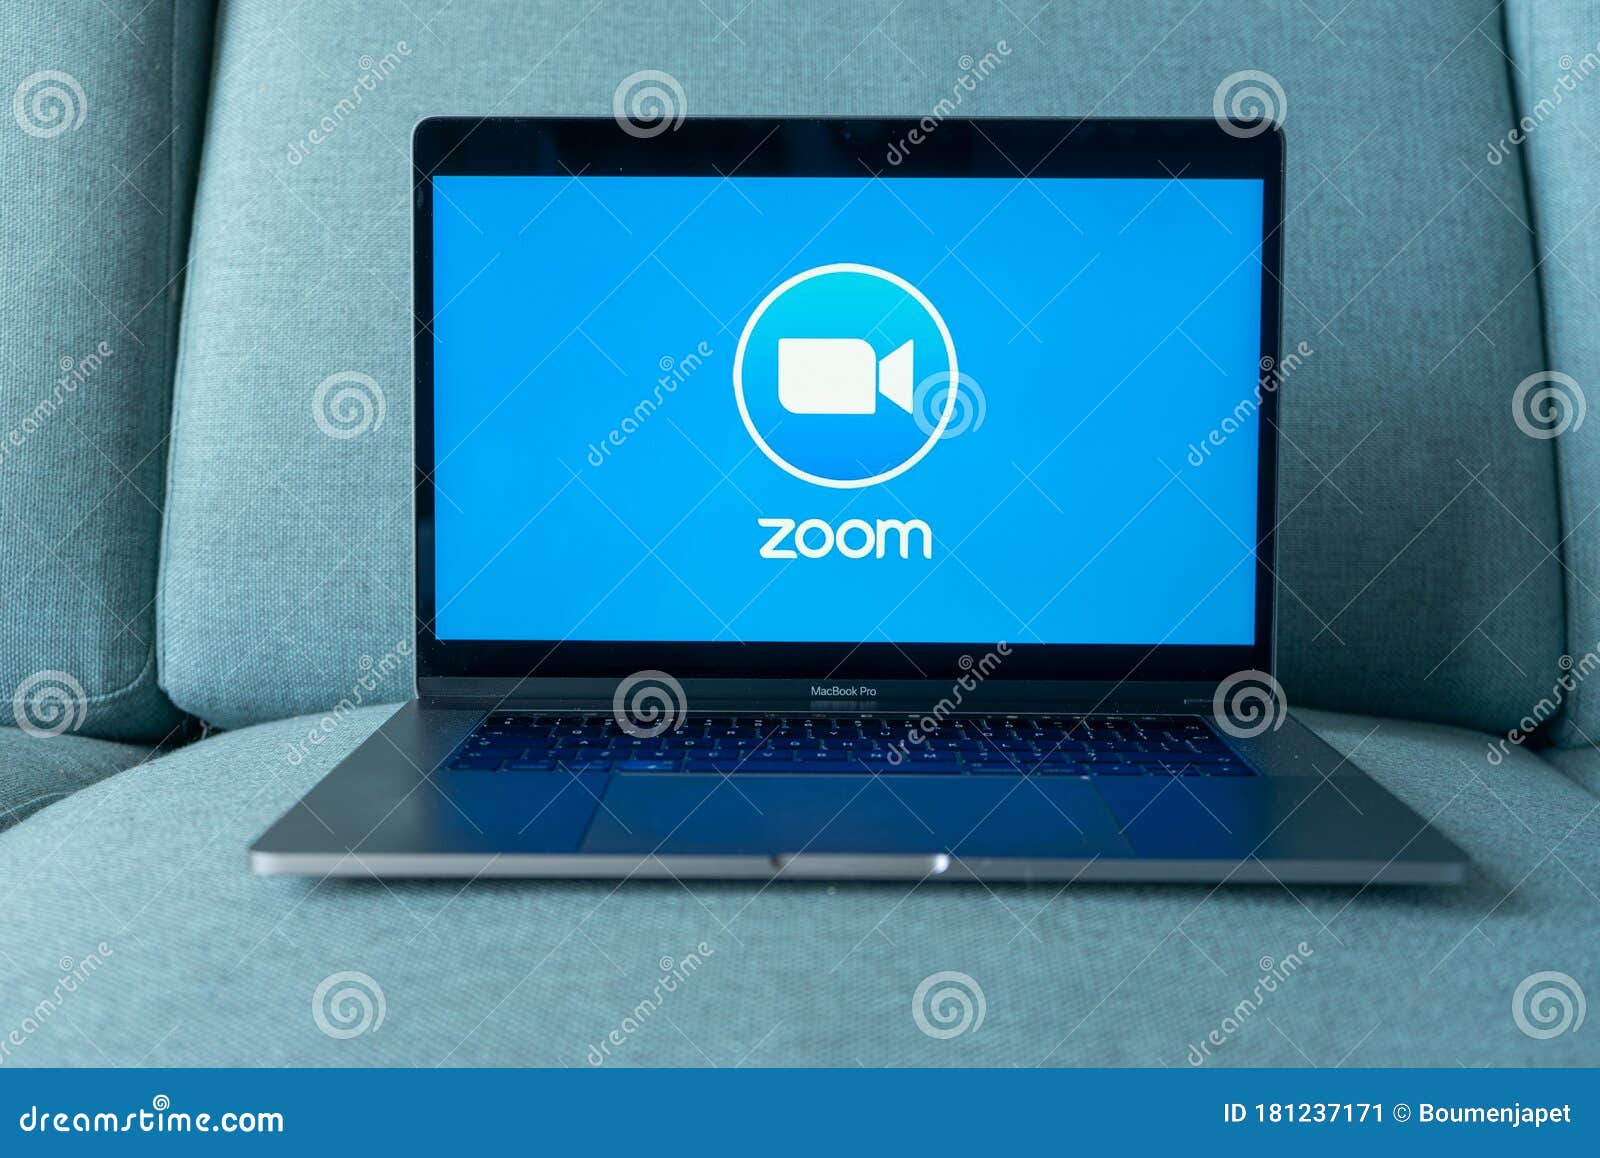 Laptop displaying Zoom logo